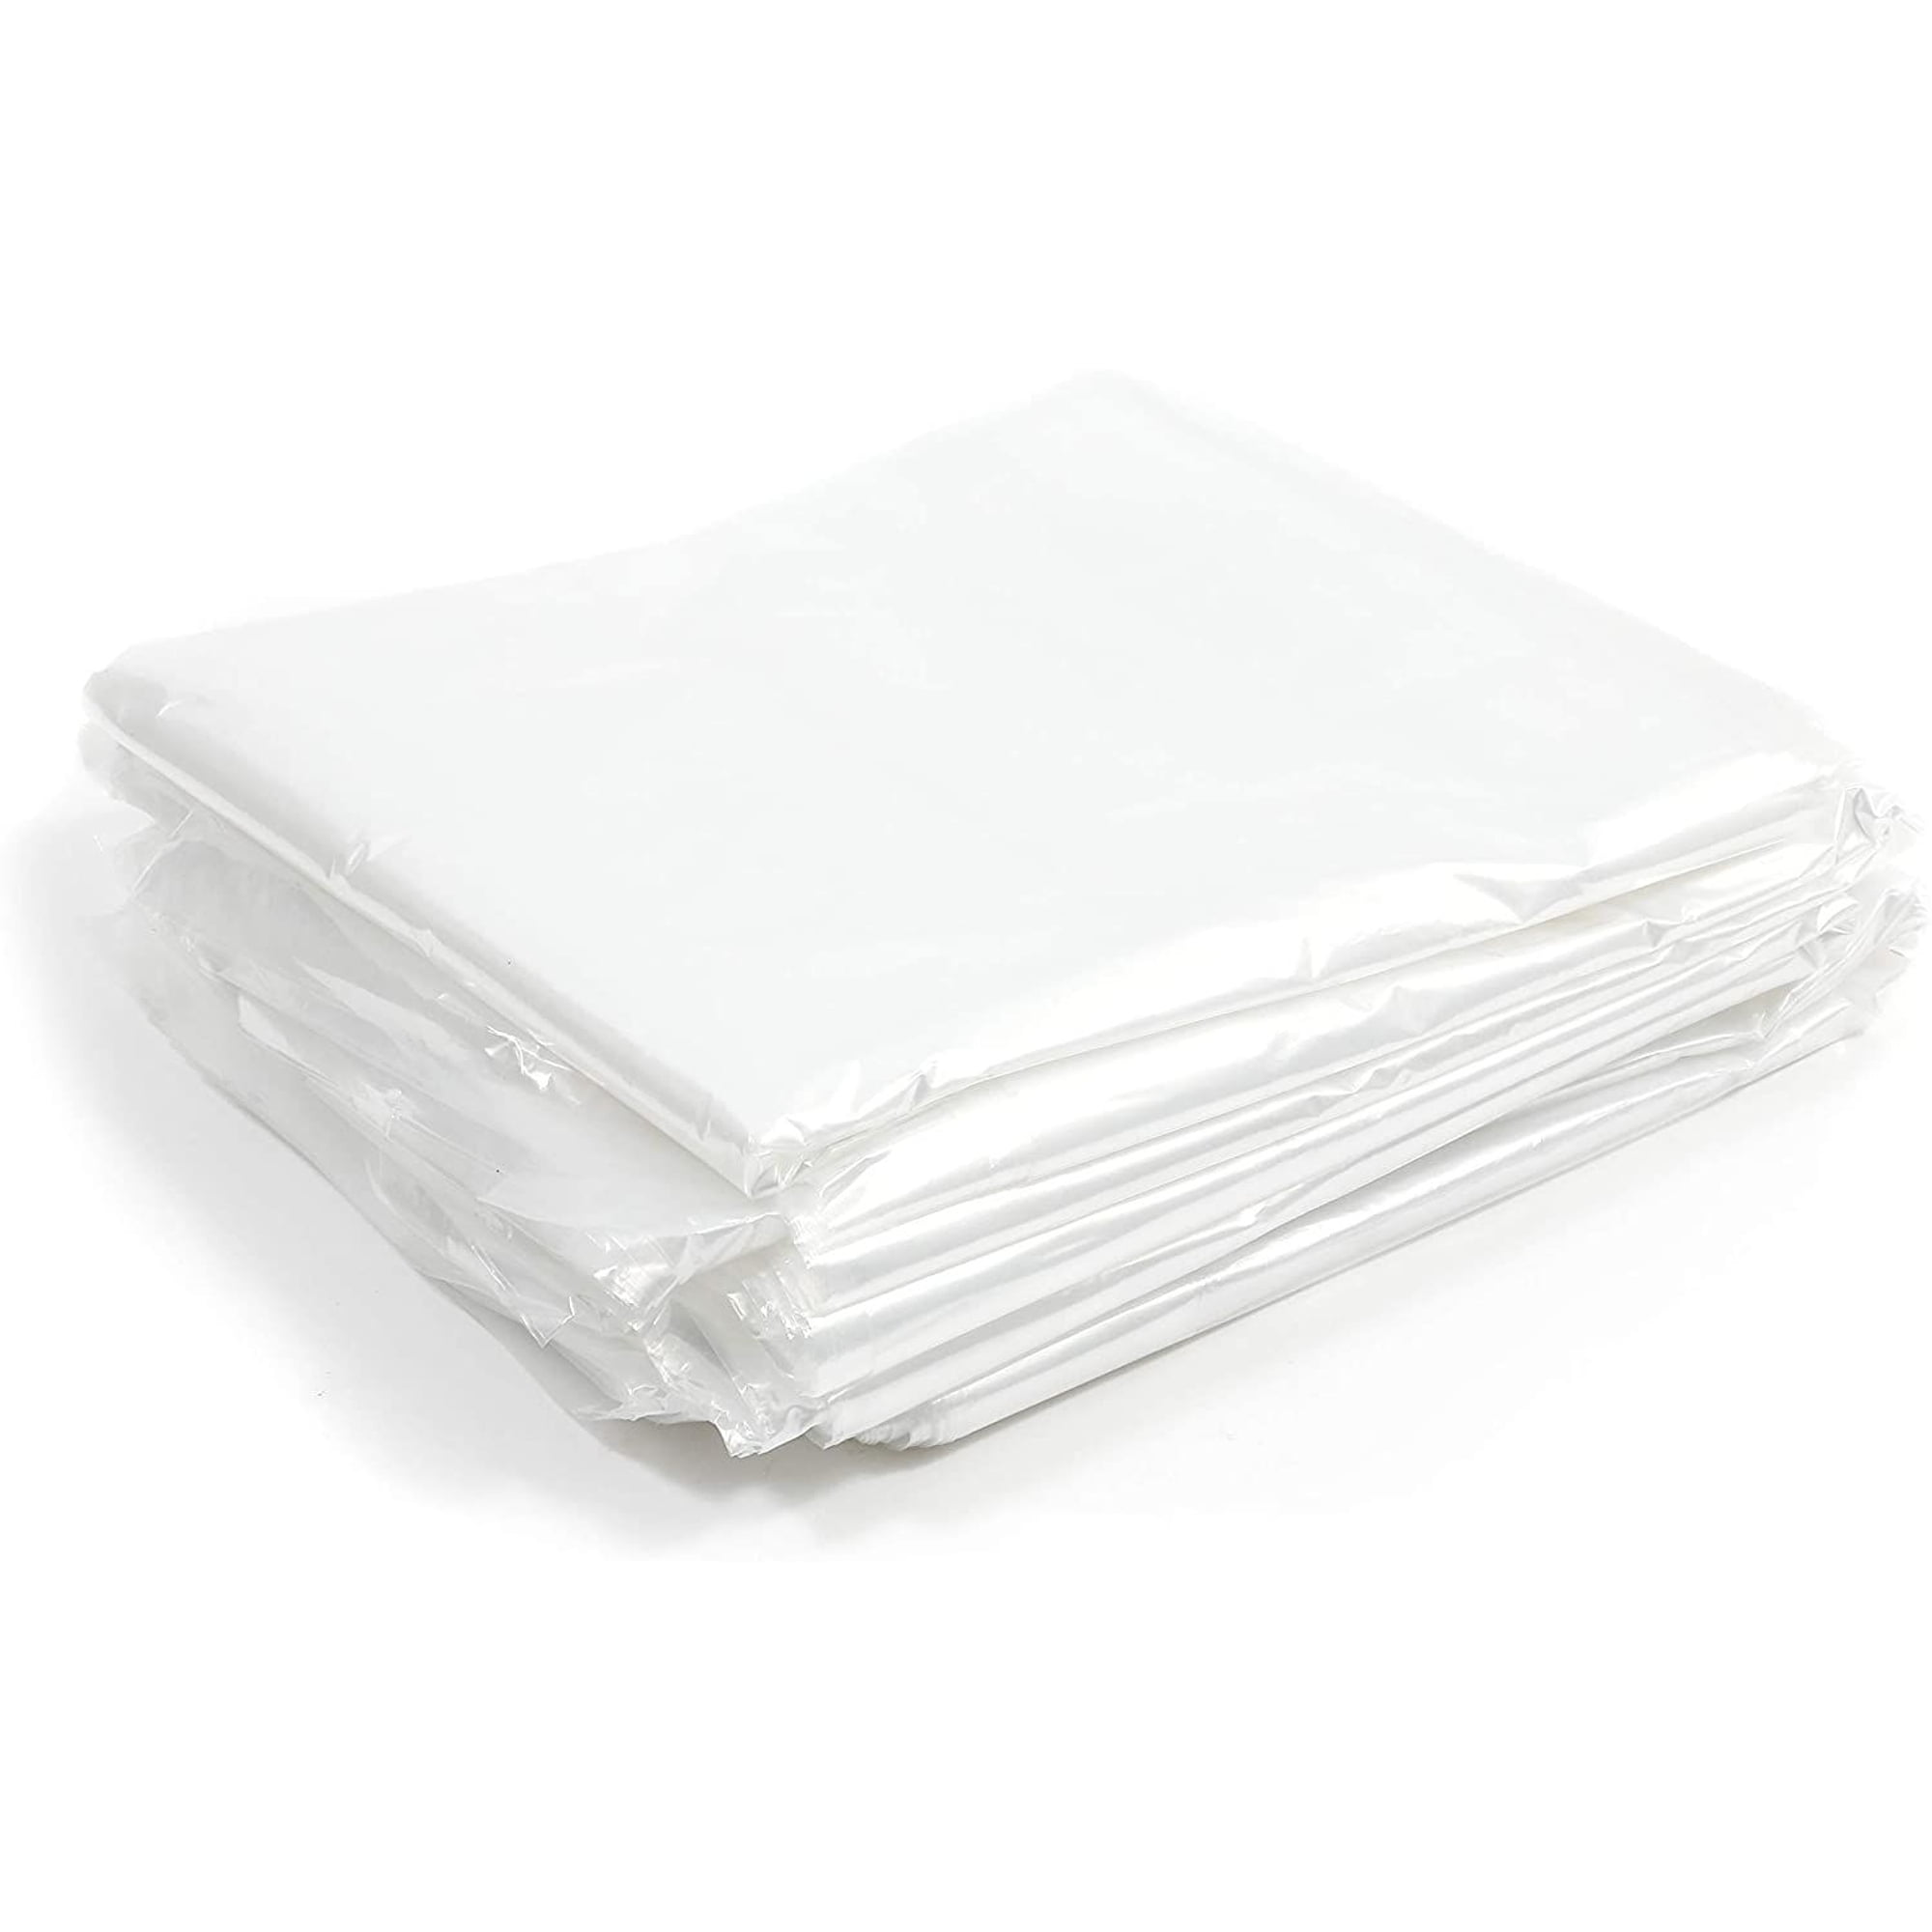 Clear Plastic Garment Bags 21x4x72 .65 mil, 269 Bags Per Roll